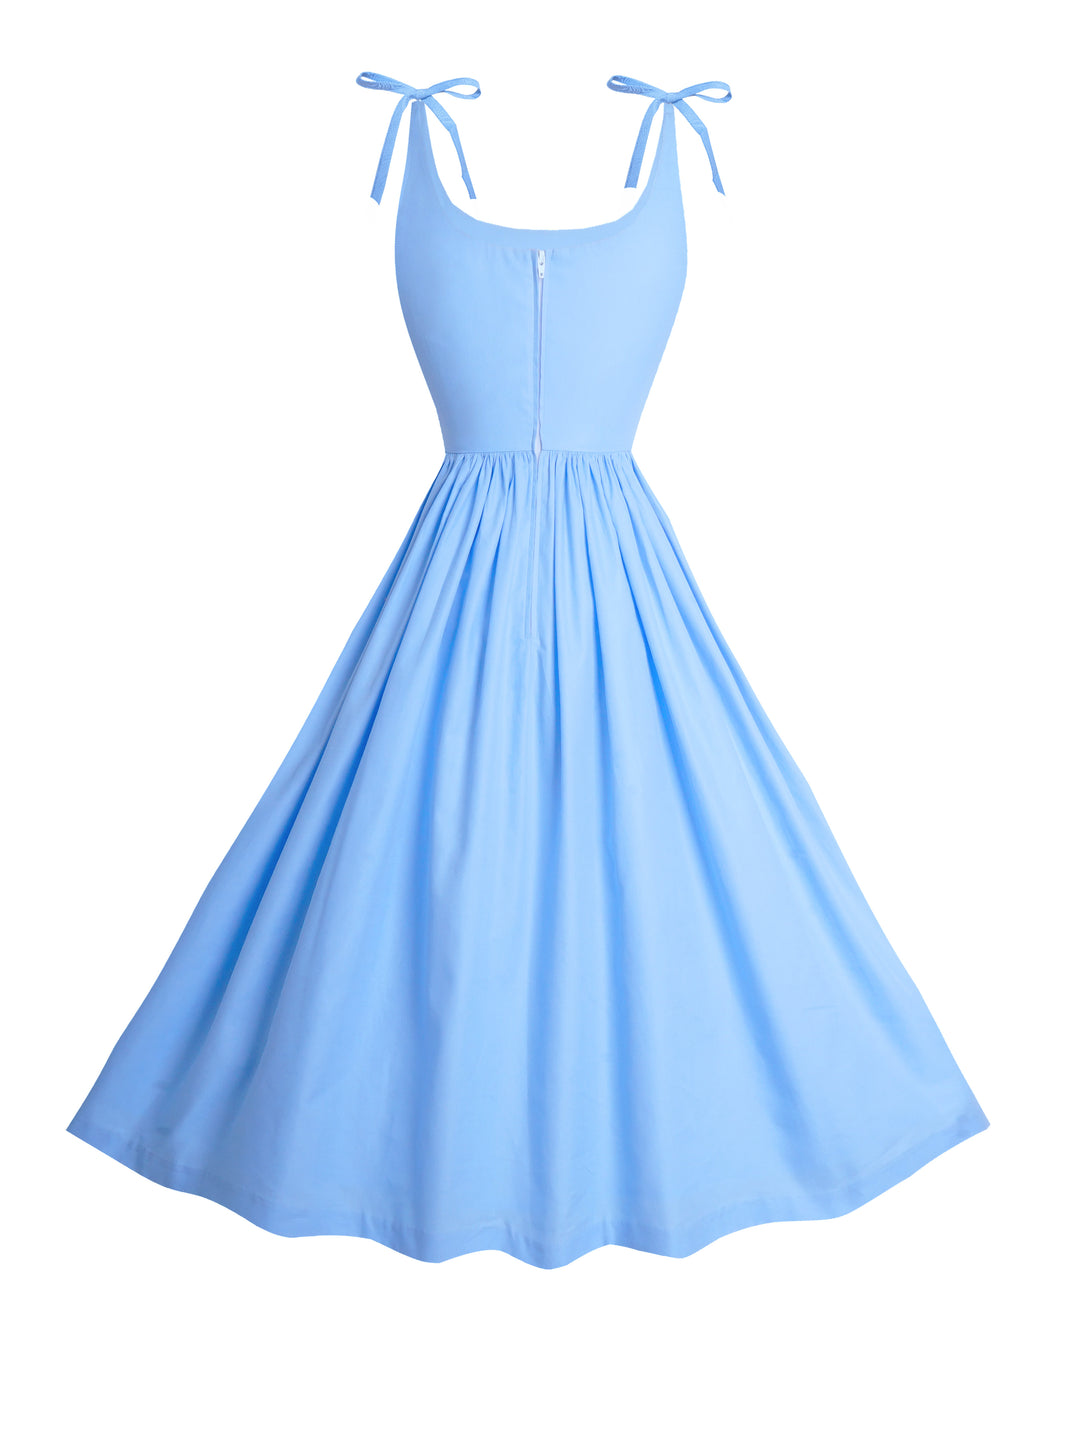 MTO - Birdie Dress in Cinderella Blue Cotton